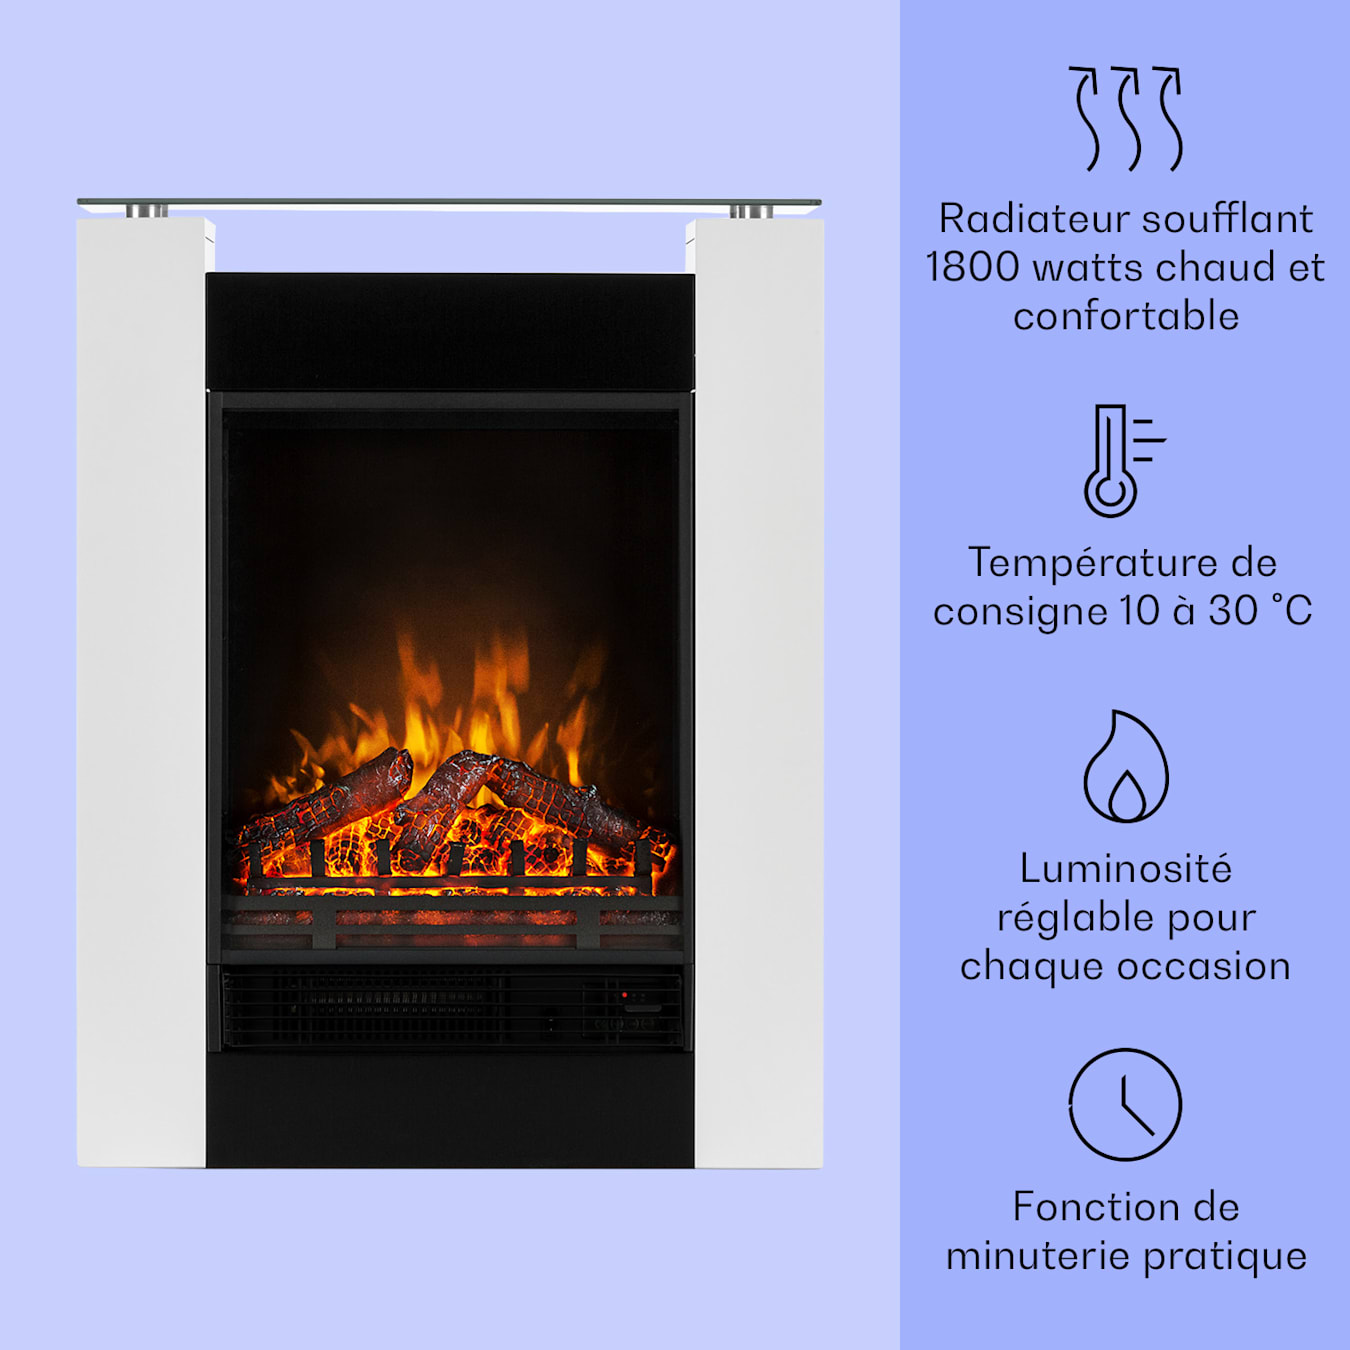 Cheminées, radiateur, poêle : 10 solutions design pour se chauffer